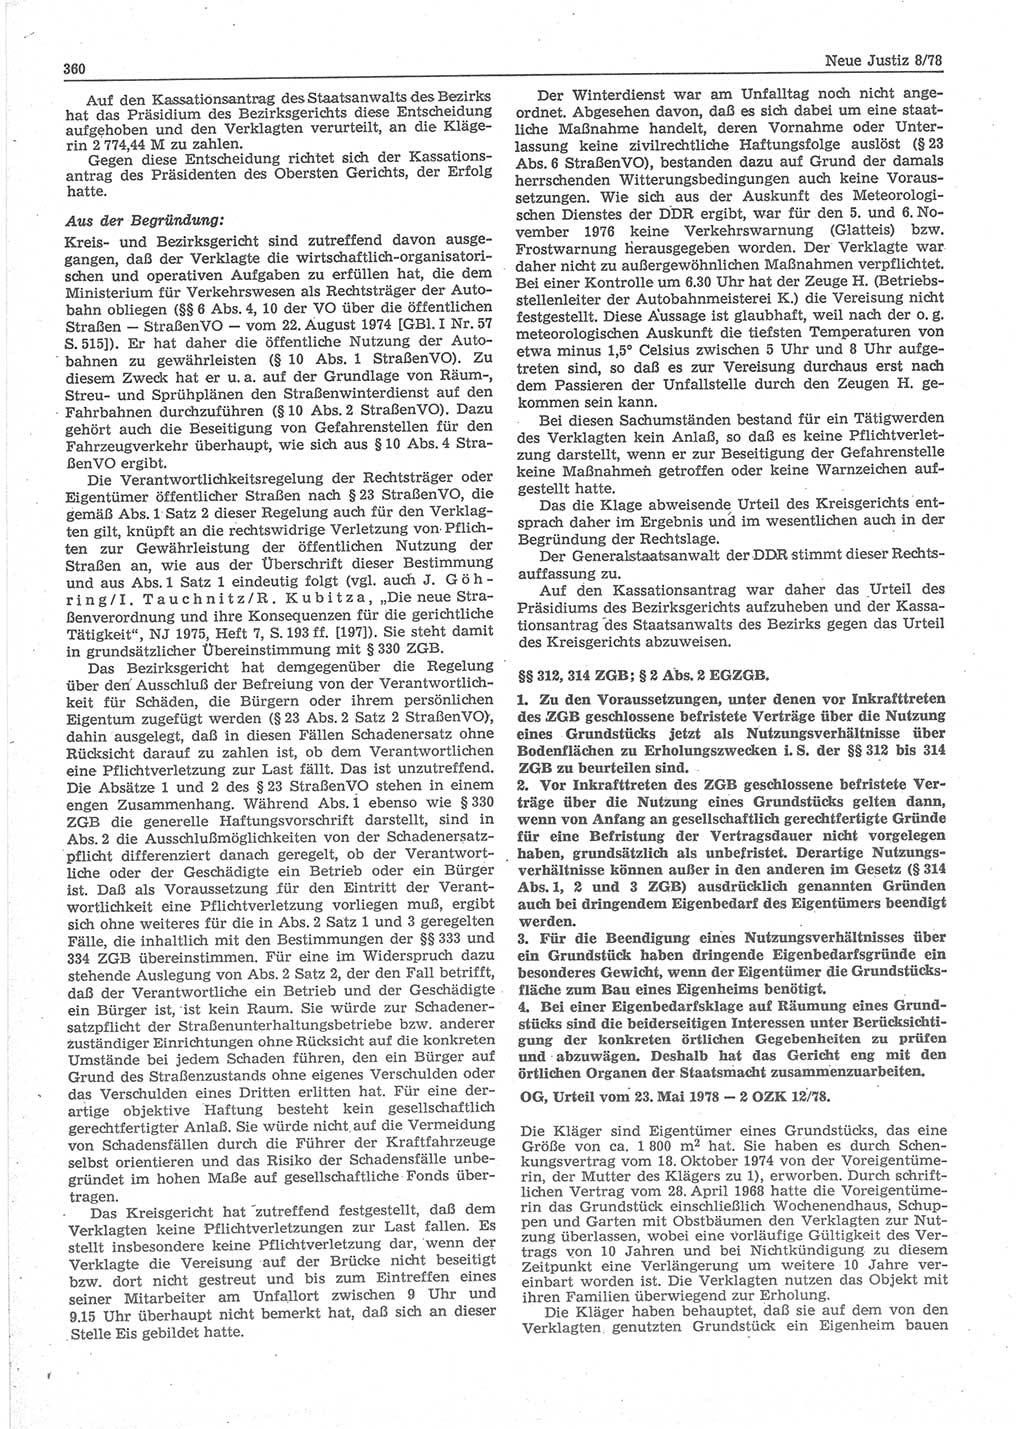 Neue Justiz (NJ), Zeitschrift für sozialistisches Recht und Gesetzlichkeit [Deutsche Demokratische Republik (DDR)], 32. Jahrgang 1978, Seite 360 (NJ DDR 1978, S. 360)